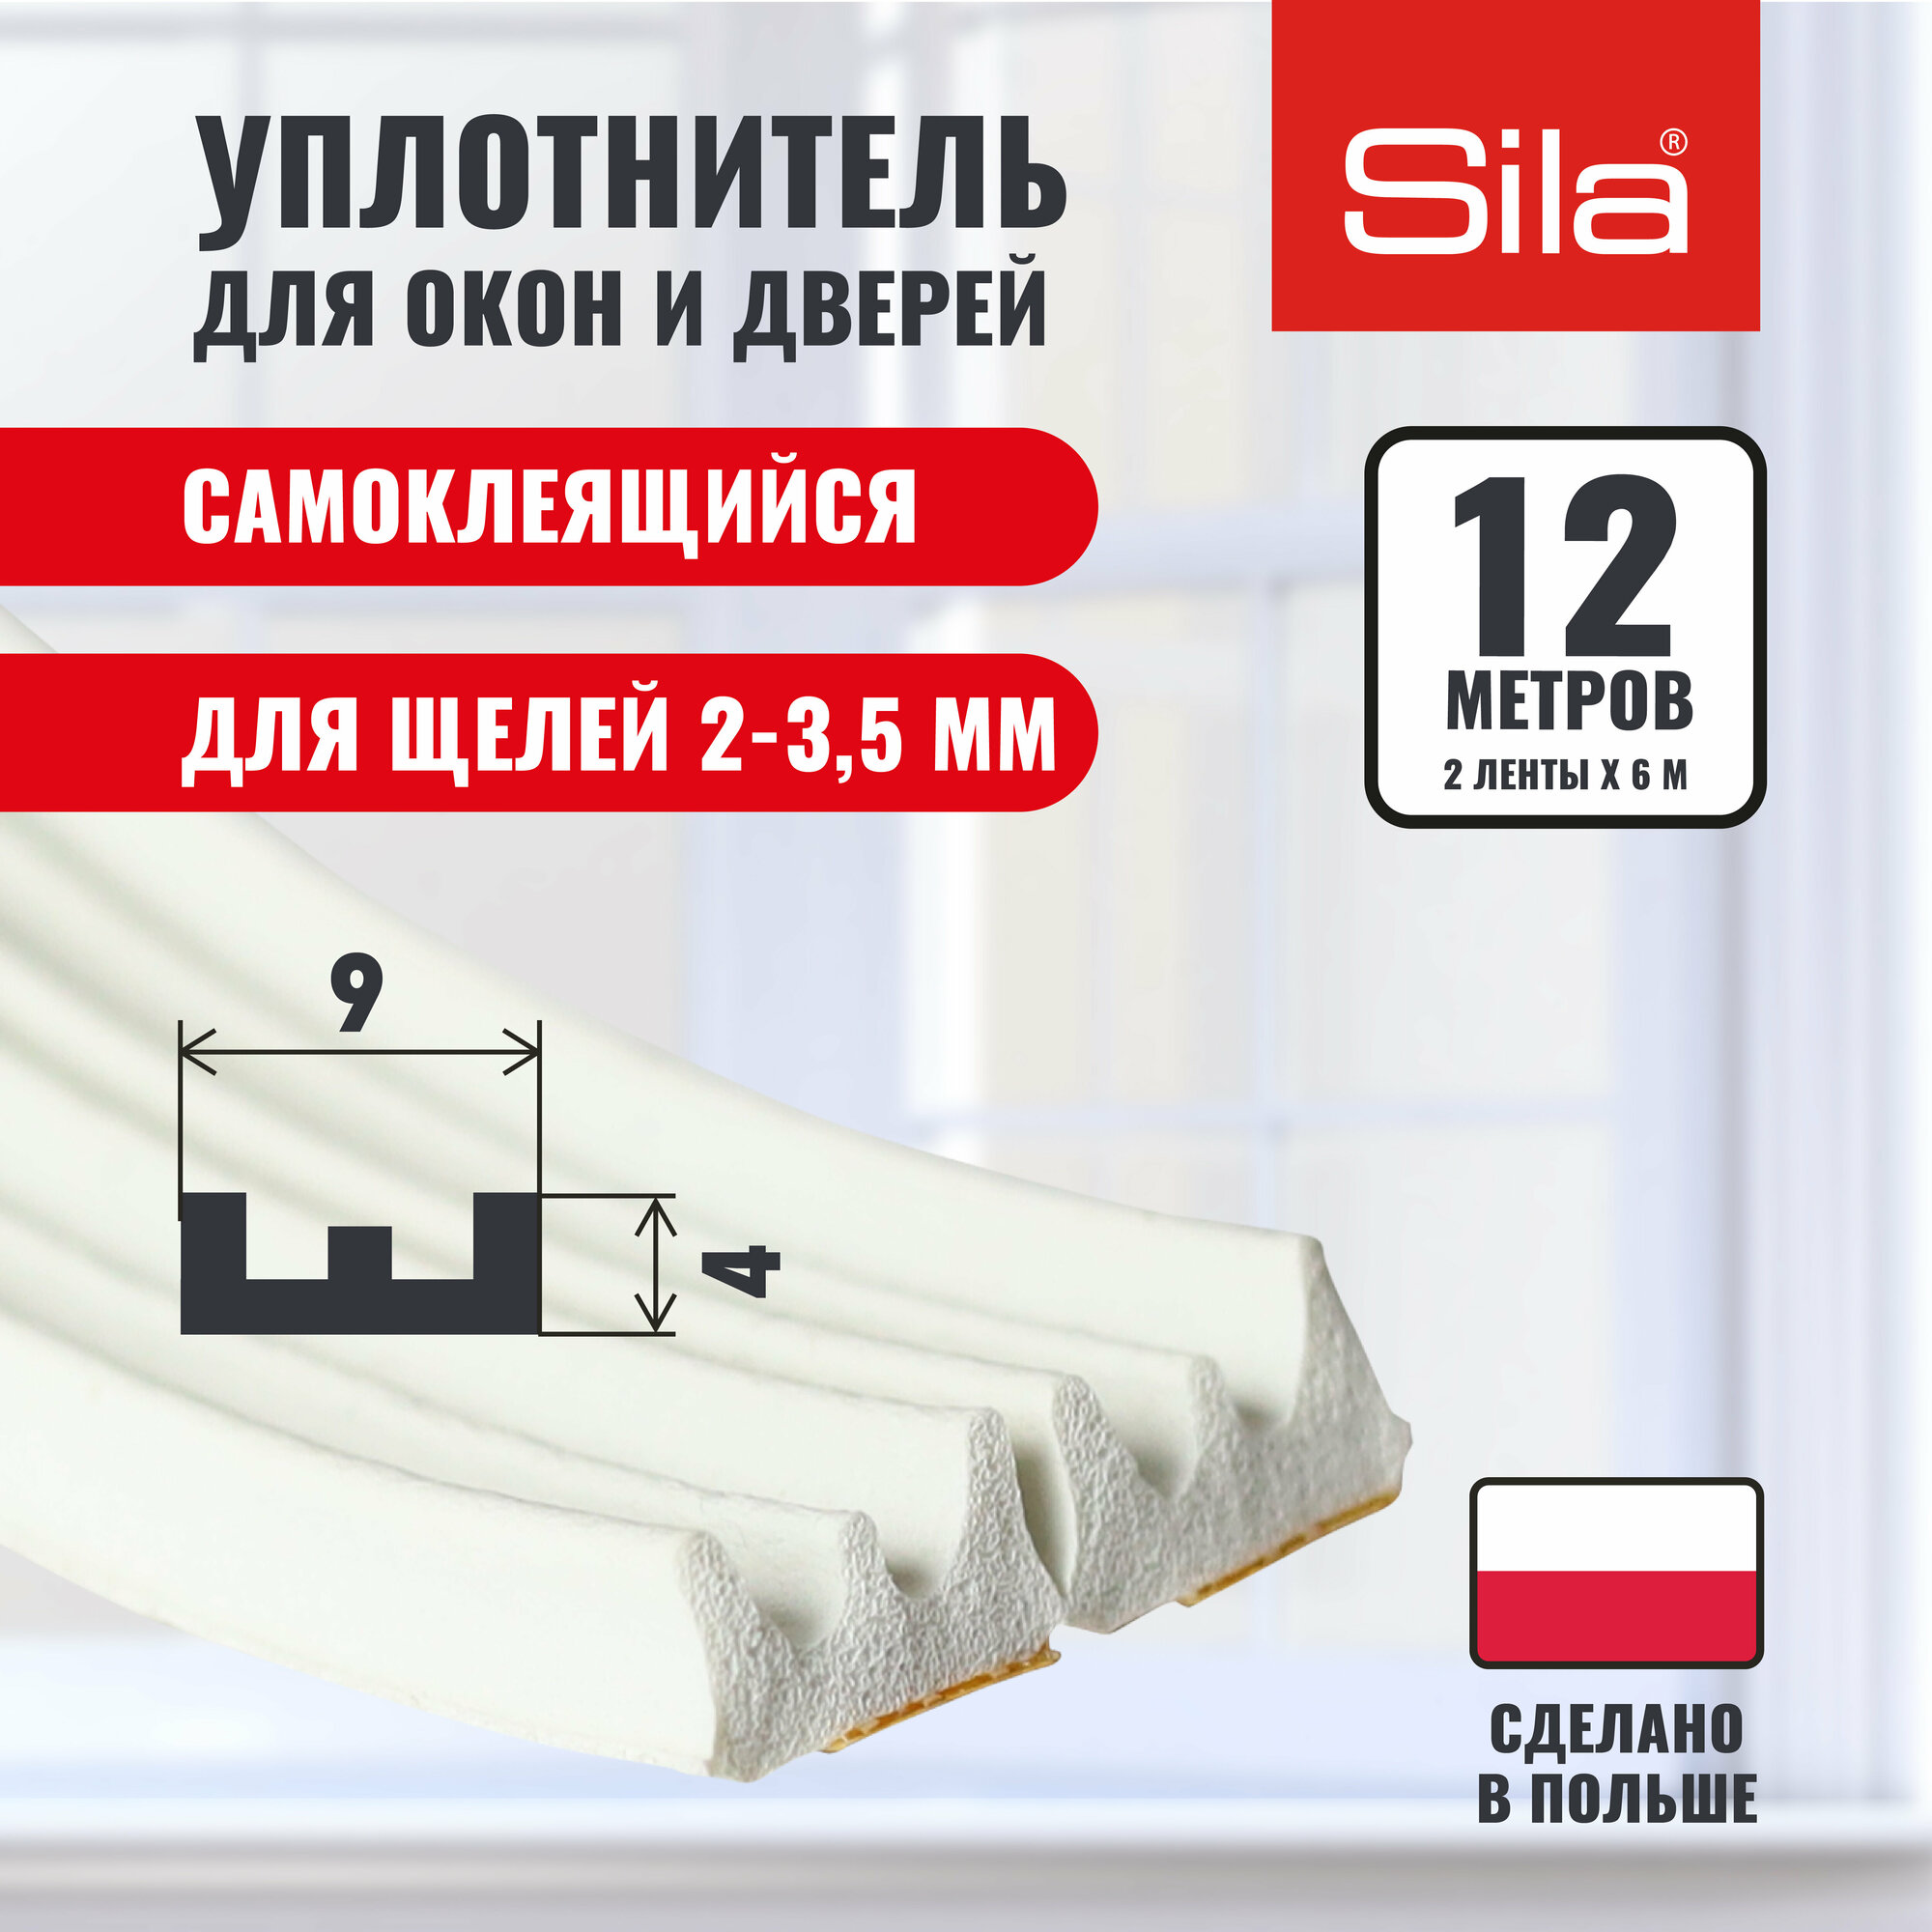 Уплотнитель для окон и дверей SILA E-профиль, 9х4мм, 12 метров (2х6м), белый, самоклеящийся SILAEW12